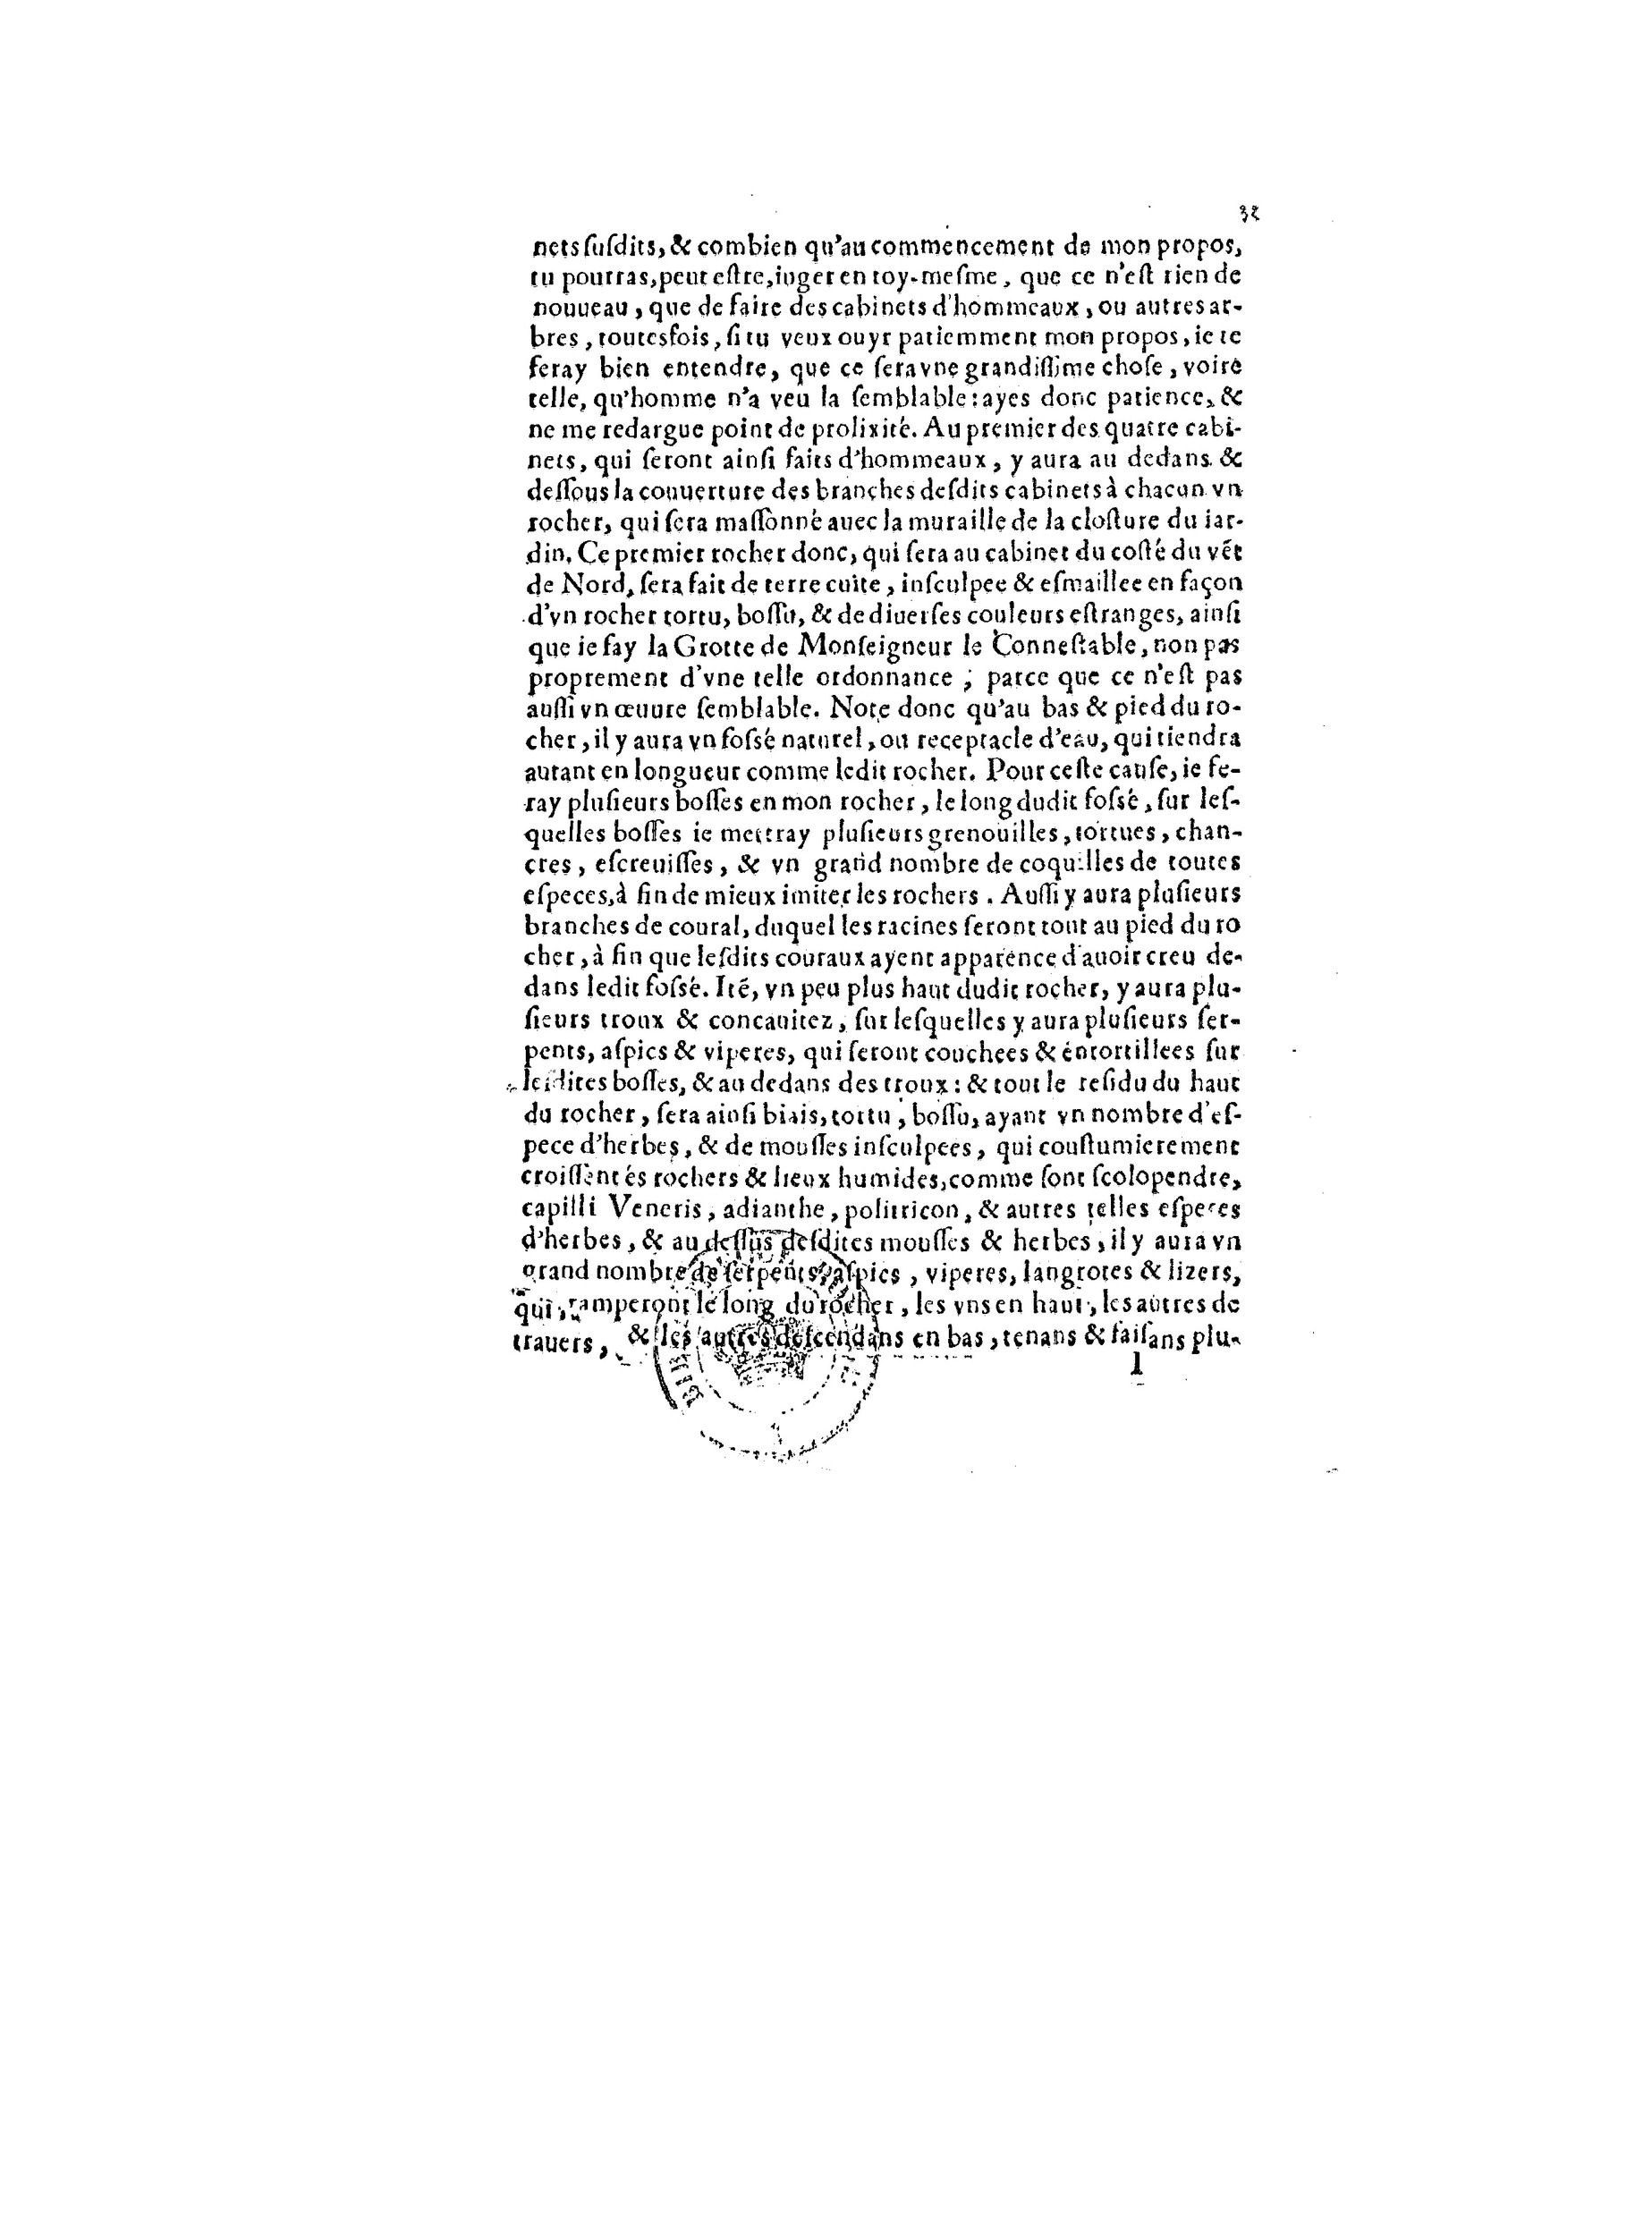 1563 Recepte veritable Berton_BNF_Page_068.jpg